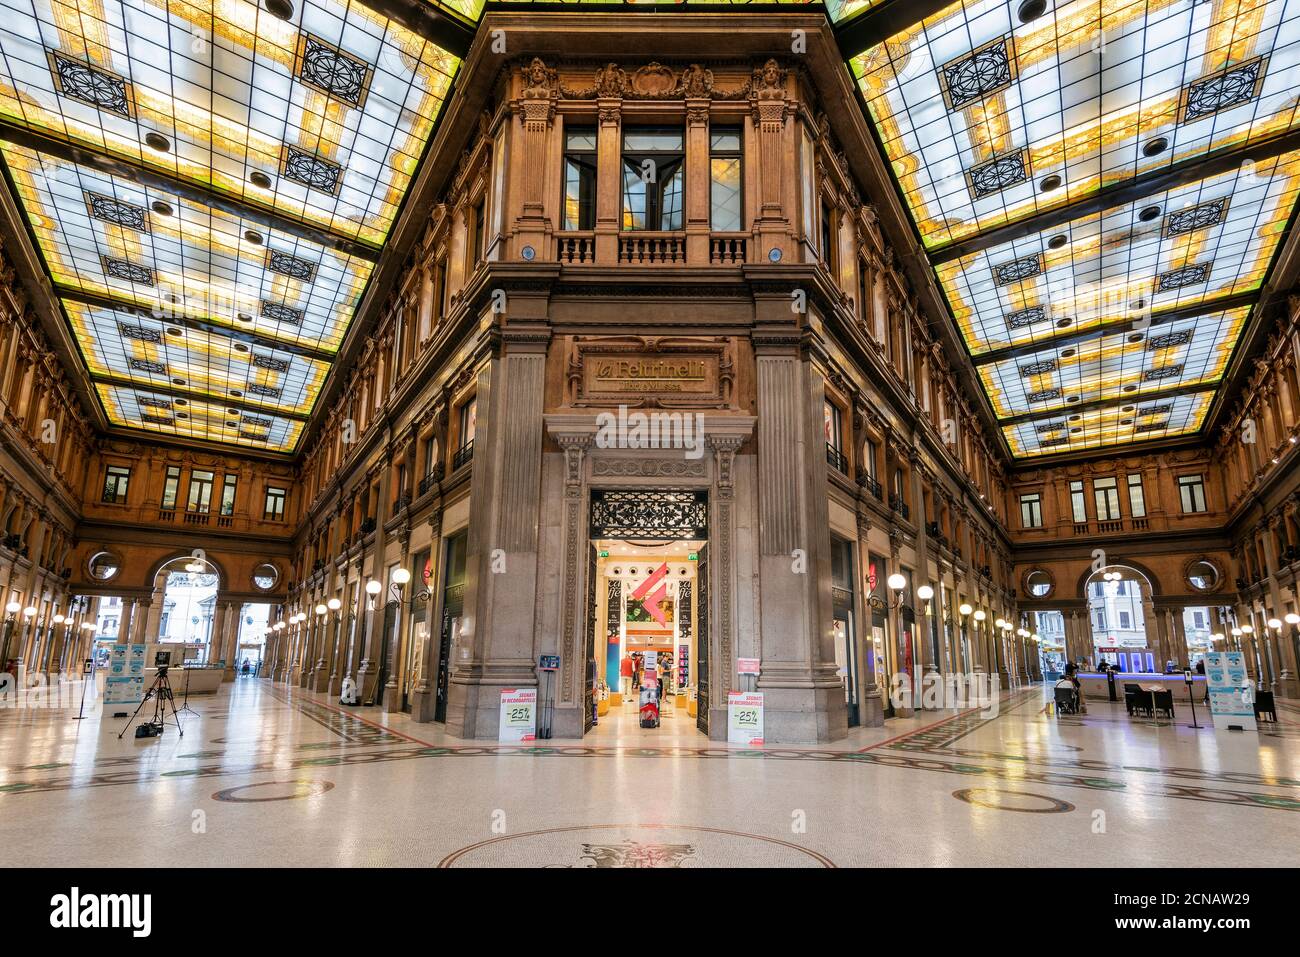 Galleria Alberto Sordi shopping arcade, Rome, Lazio, Italy Stock Photo